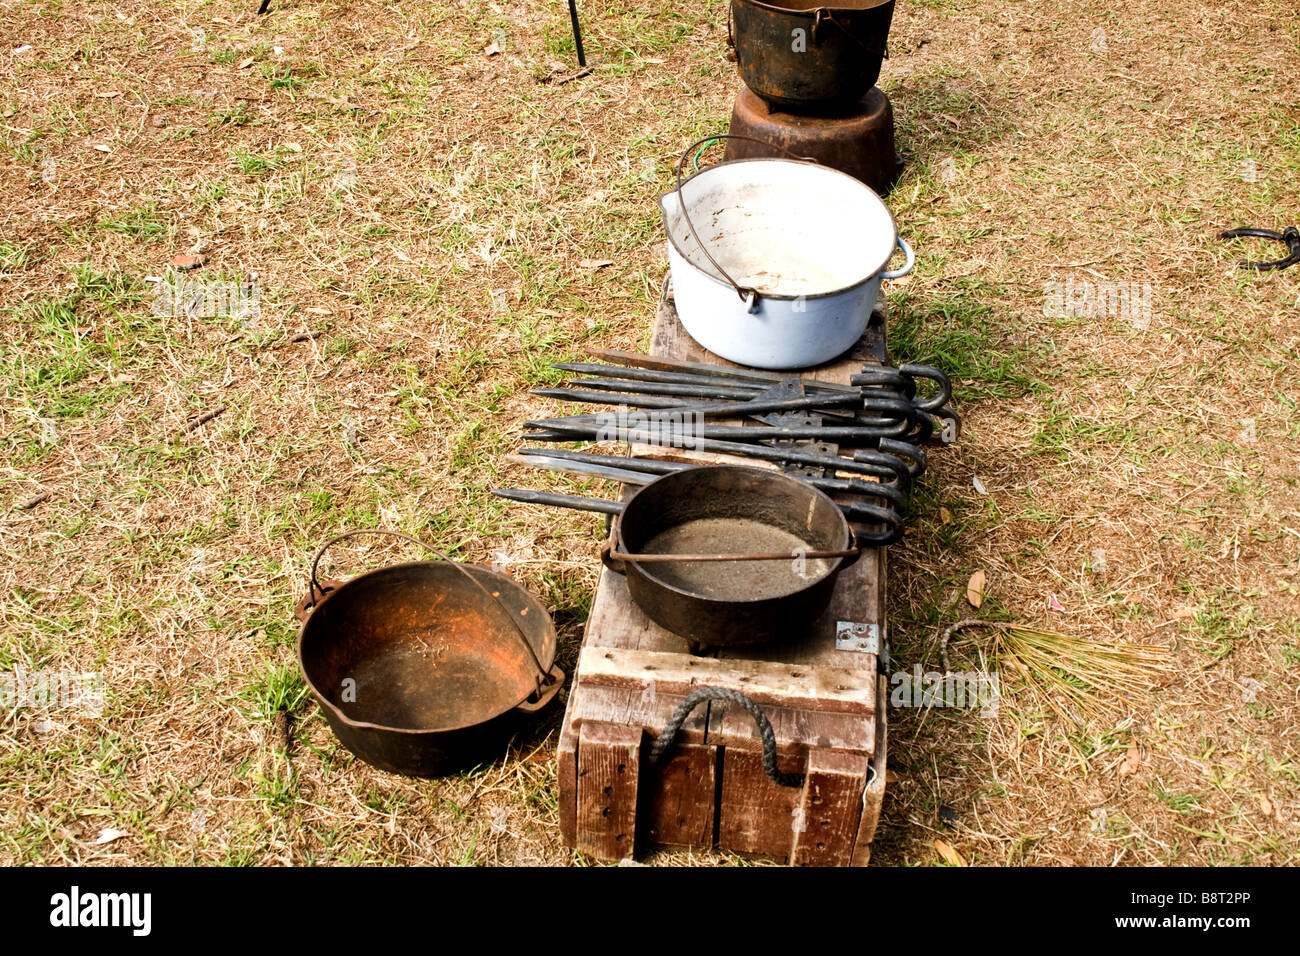 Moda antiguos utensilios de cocina y clavos metálicos en un banco de madera Foto de stock